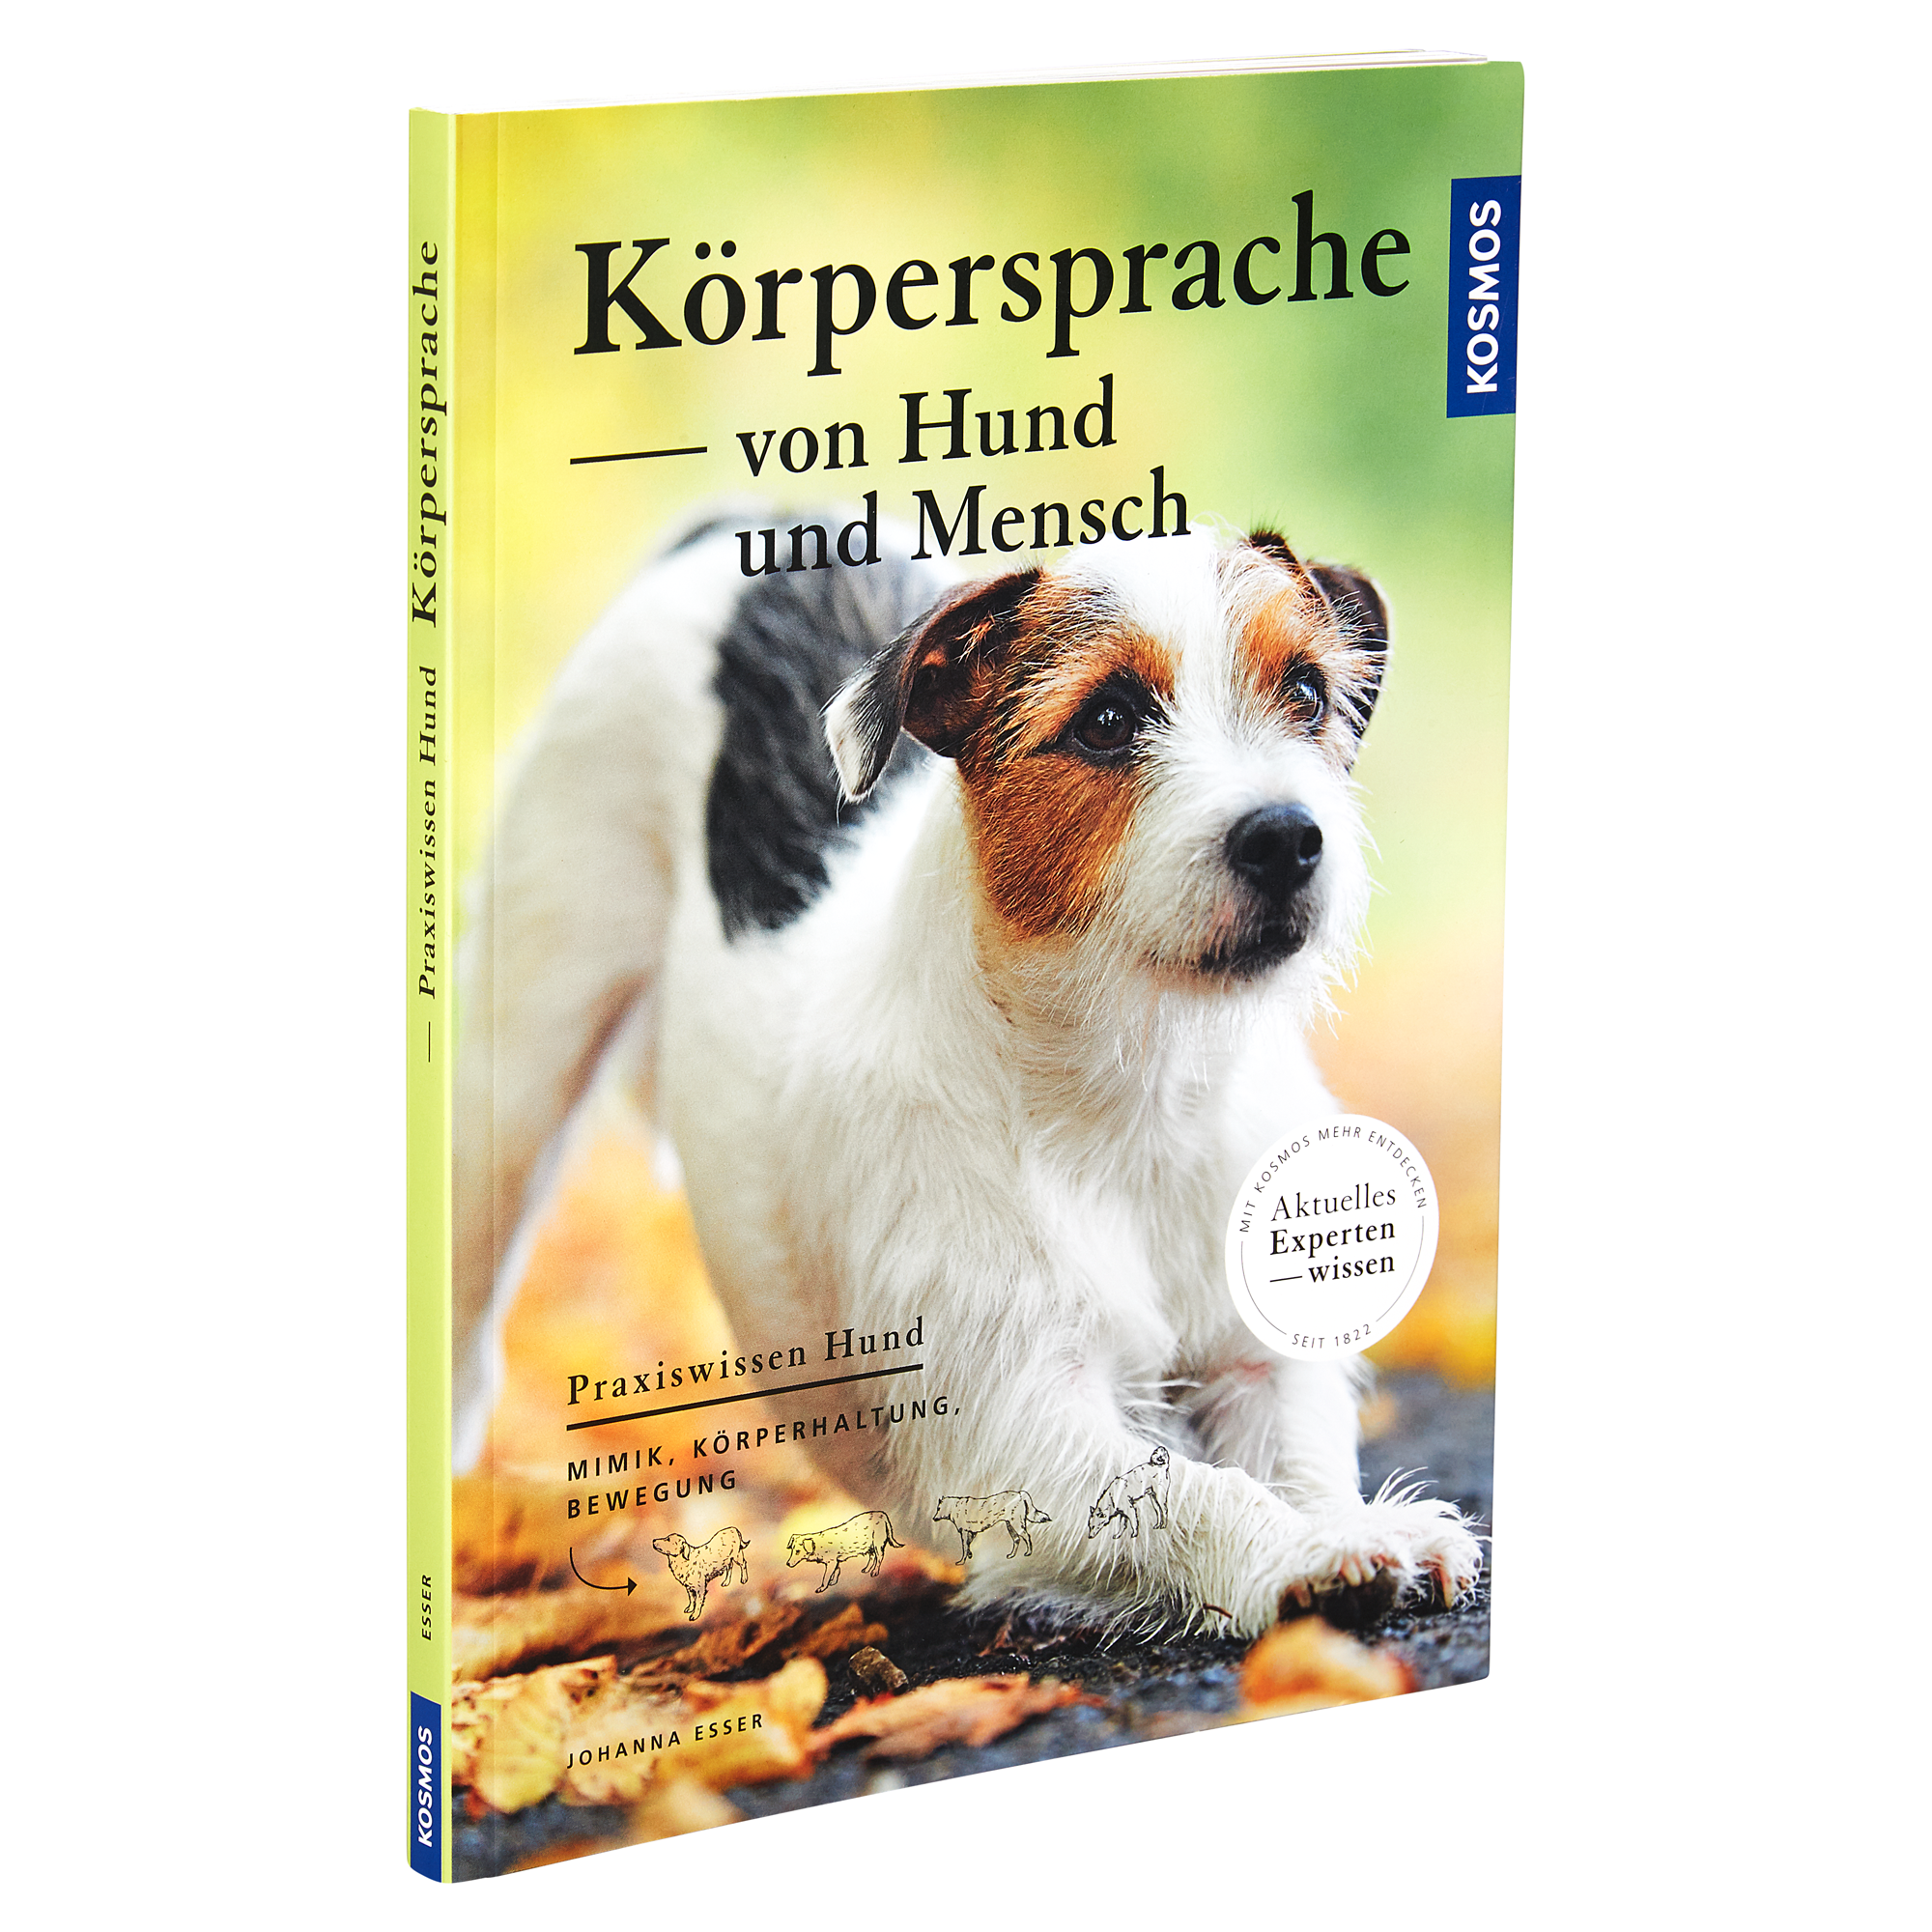 Kosmos-Tierratgeber "Körpersprache von Hund und Mensch" PB 112 S. + product picture